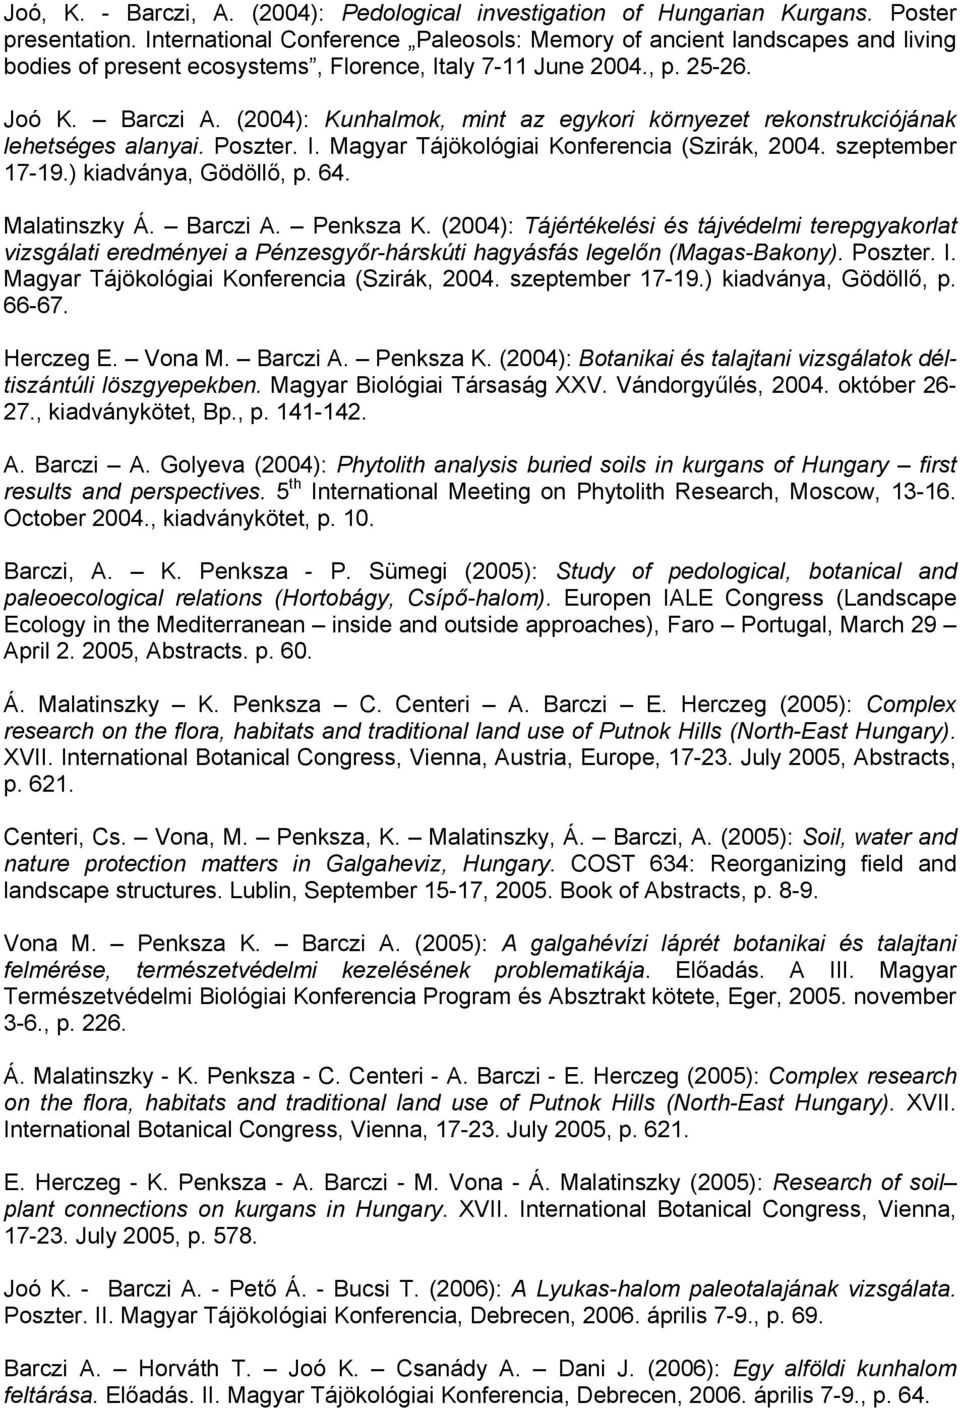 (2004): Kunhalmok, mint az egykori környezet rekonstrukciójának lehetséges alanyai. Poszter. I. Magyar Tájökológiai Konferencia (Szirák, 2004. szeptember 17-19.) kiadványa, Gödöllő, p. 64.